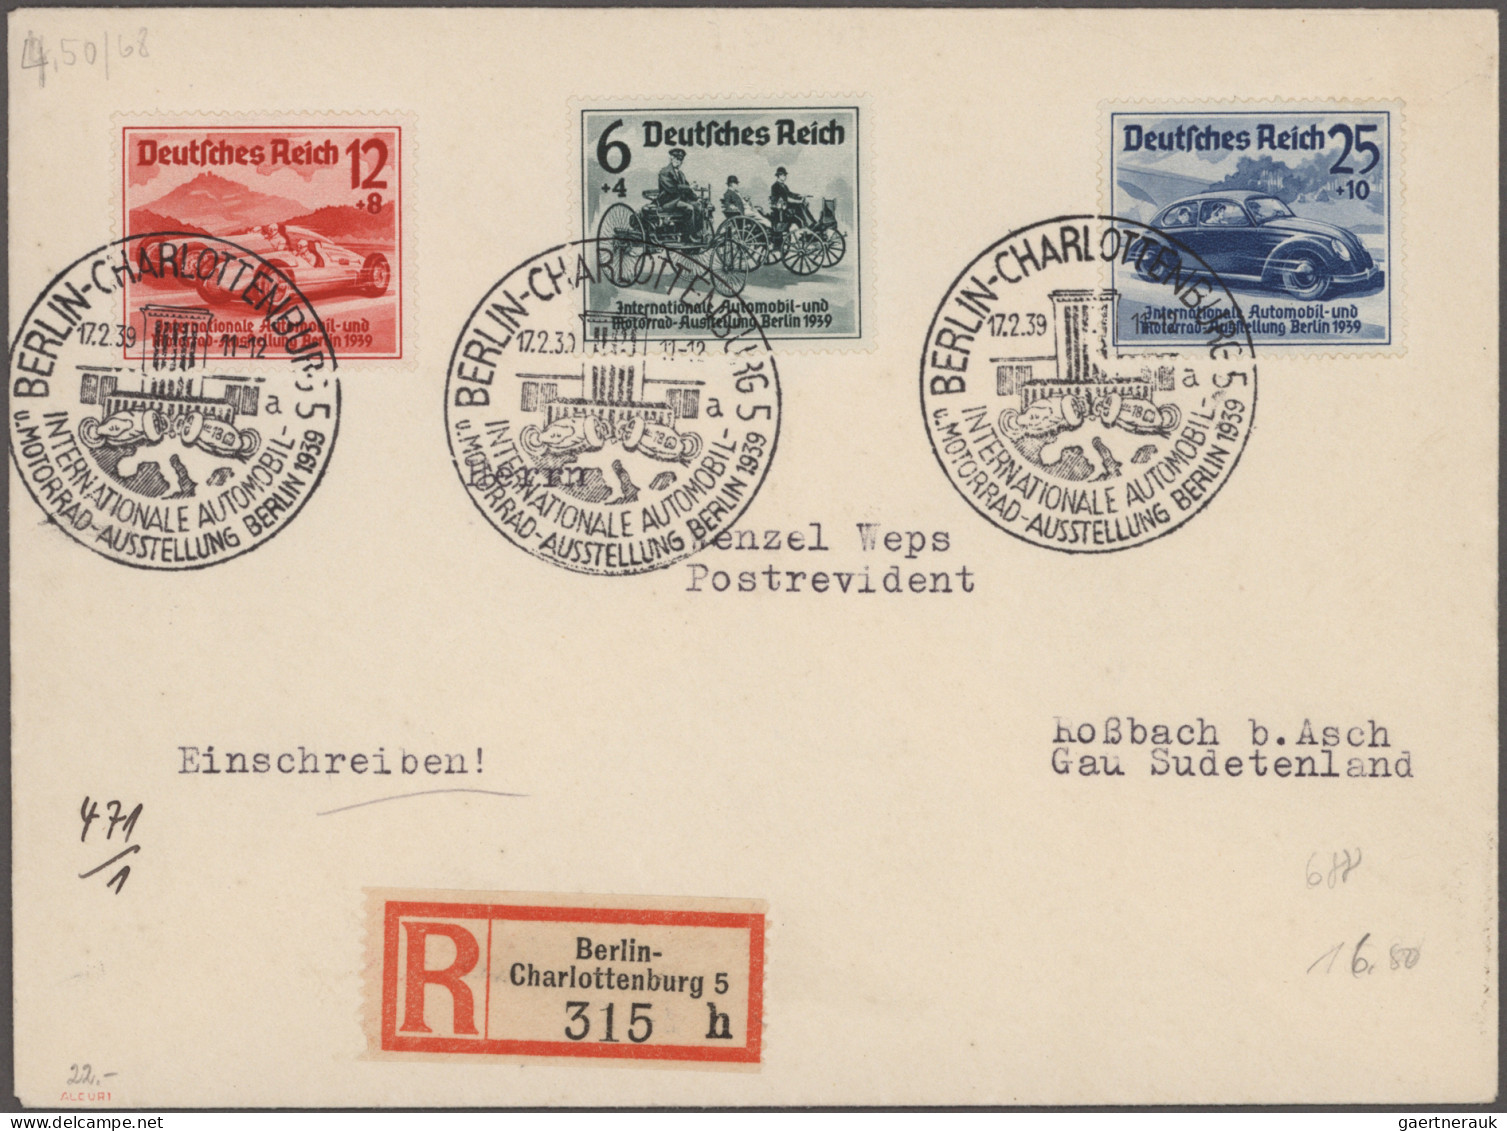 Deutsches Reich - 3. Reich: 1933/1944, vielseitige Partie von ca. 105 Briefen un